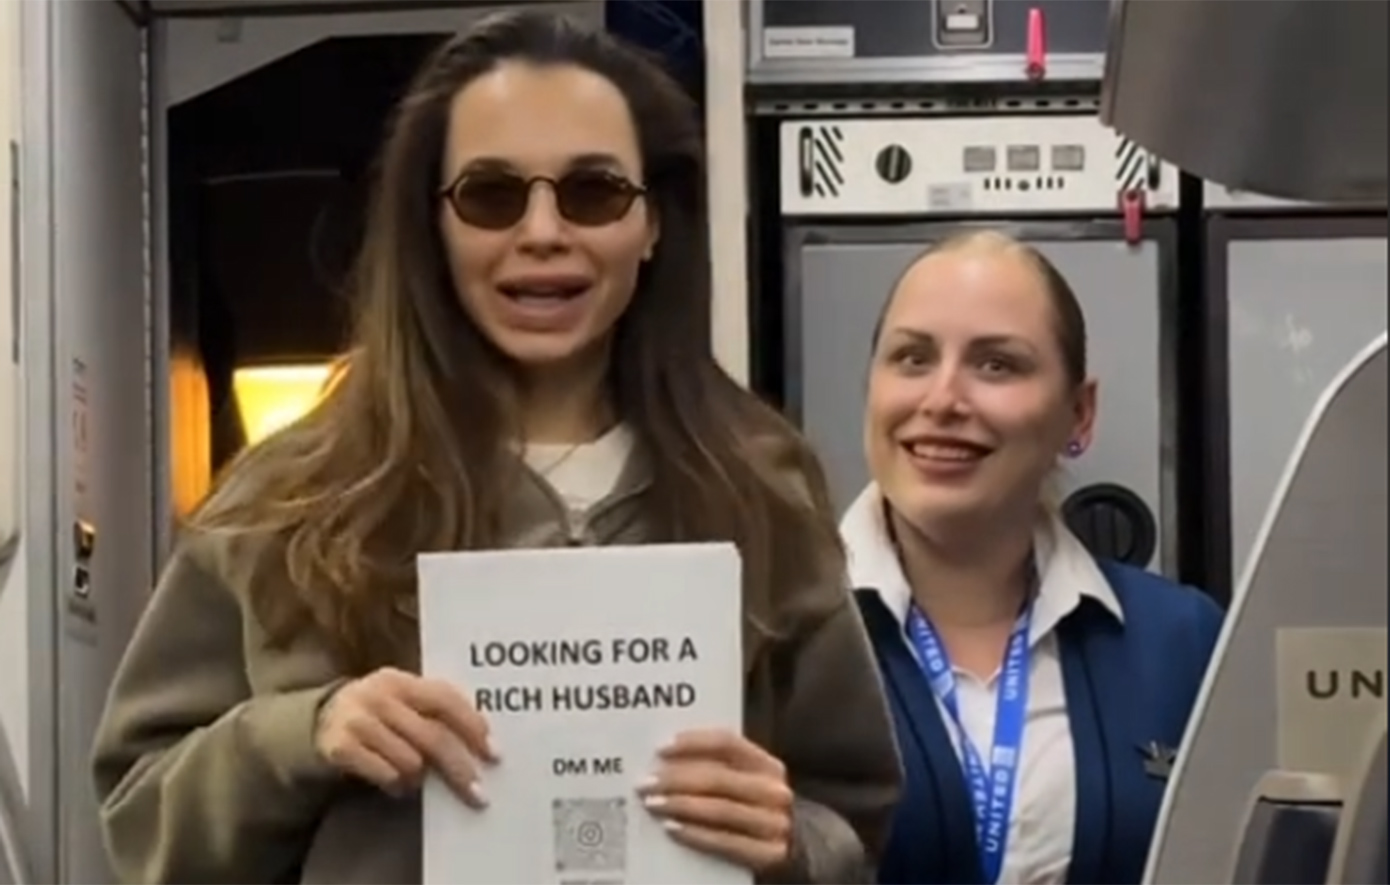 Η έκκληση γυναίκας για έναν «πλούσιο σύζυγο» στο αεροπλάνο, που έγινε viral